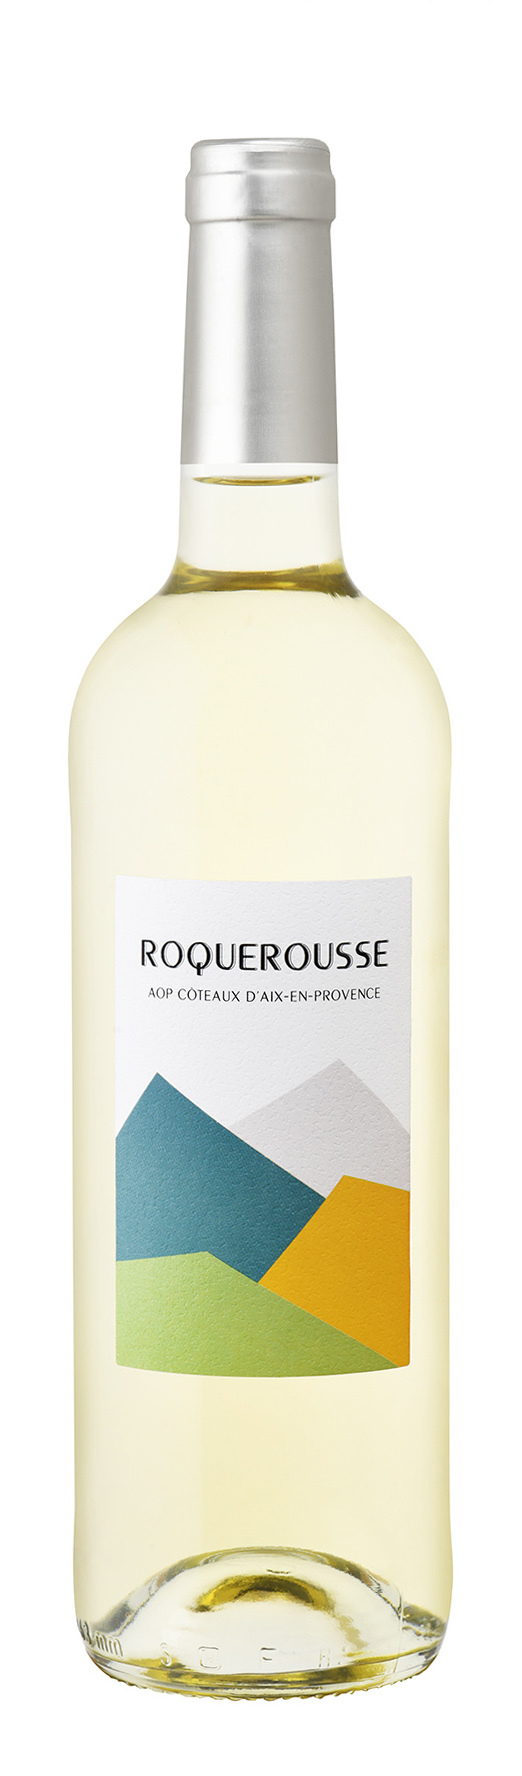 Roquerousse